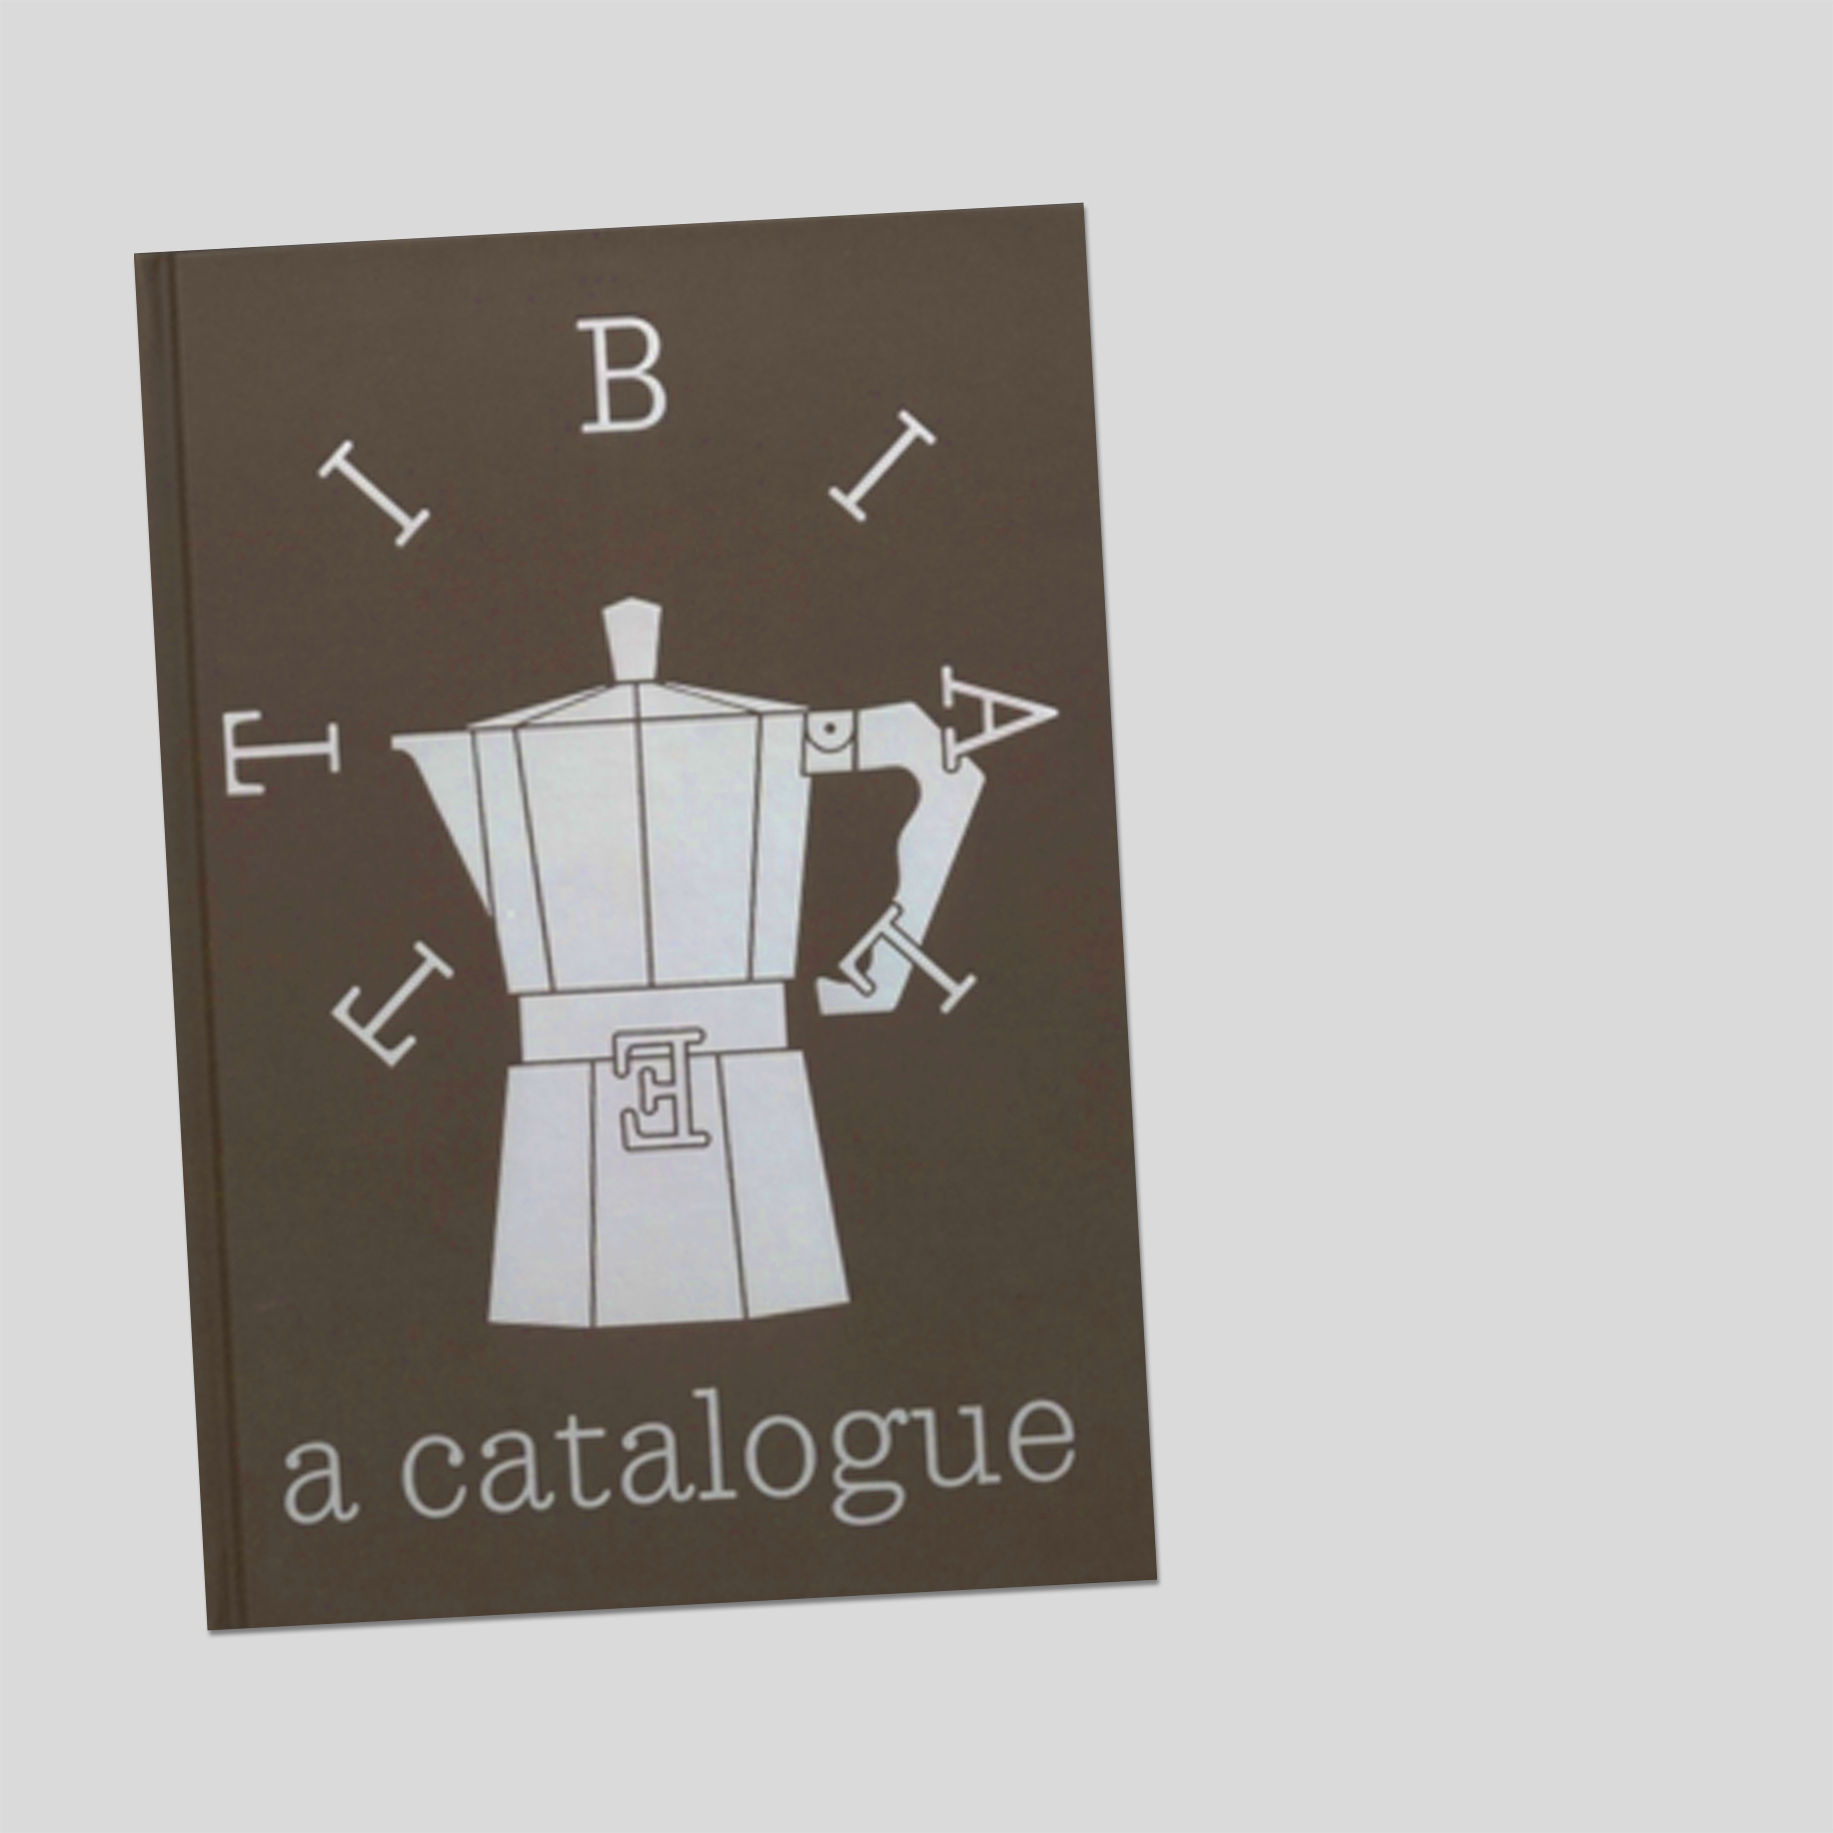 Bialetti : a catalogue — David Bergé